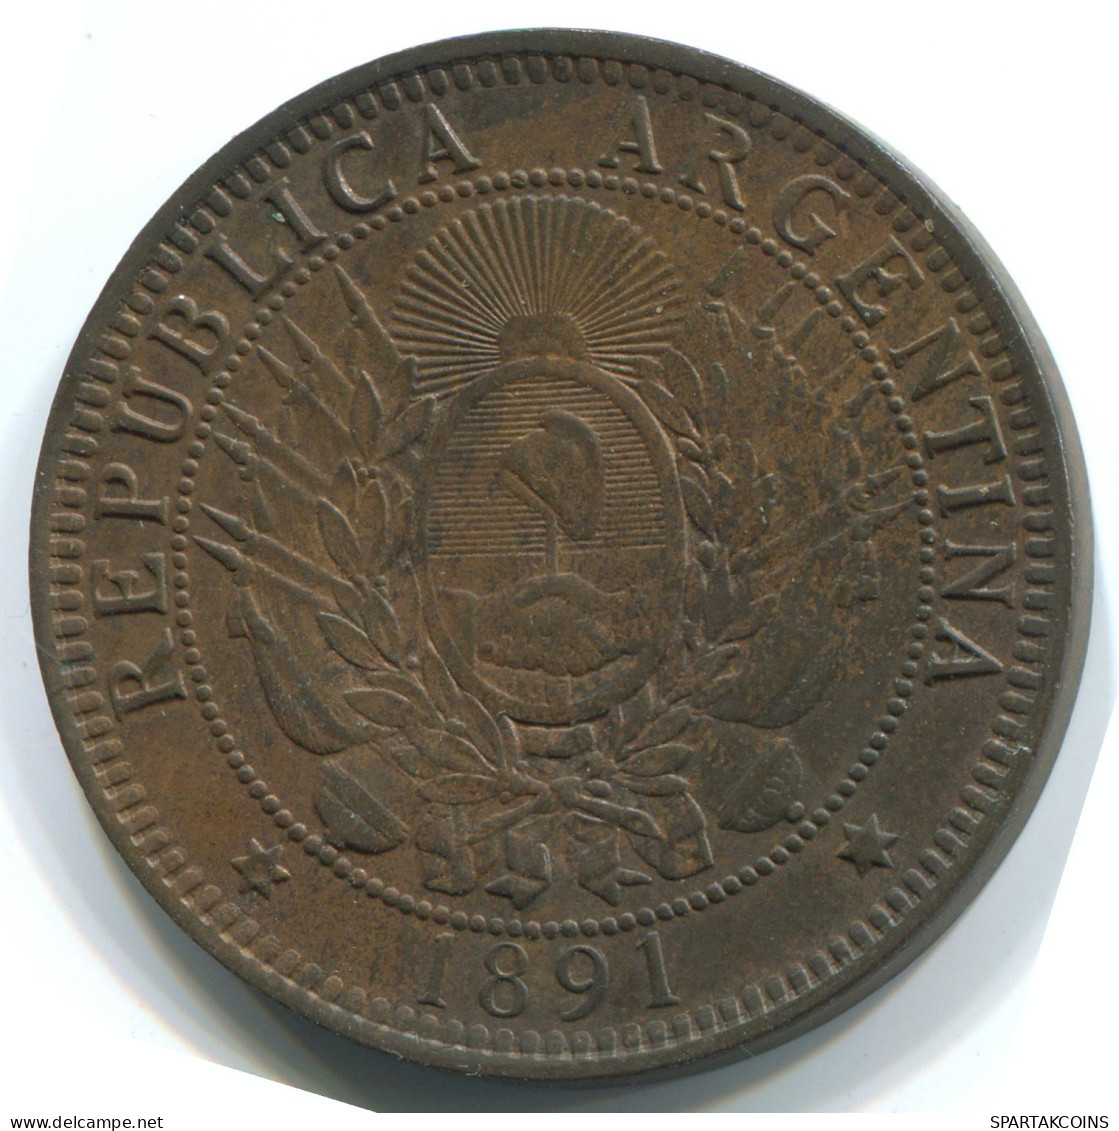 2 CENTAVOS 1891 ARGENTINA Moneda #WW1138.E.A - Argentina